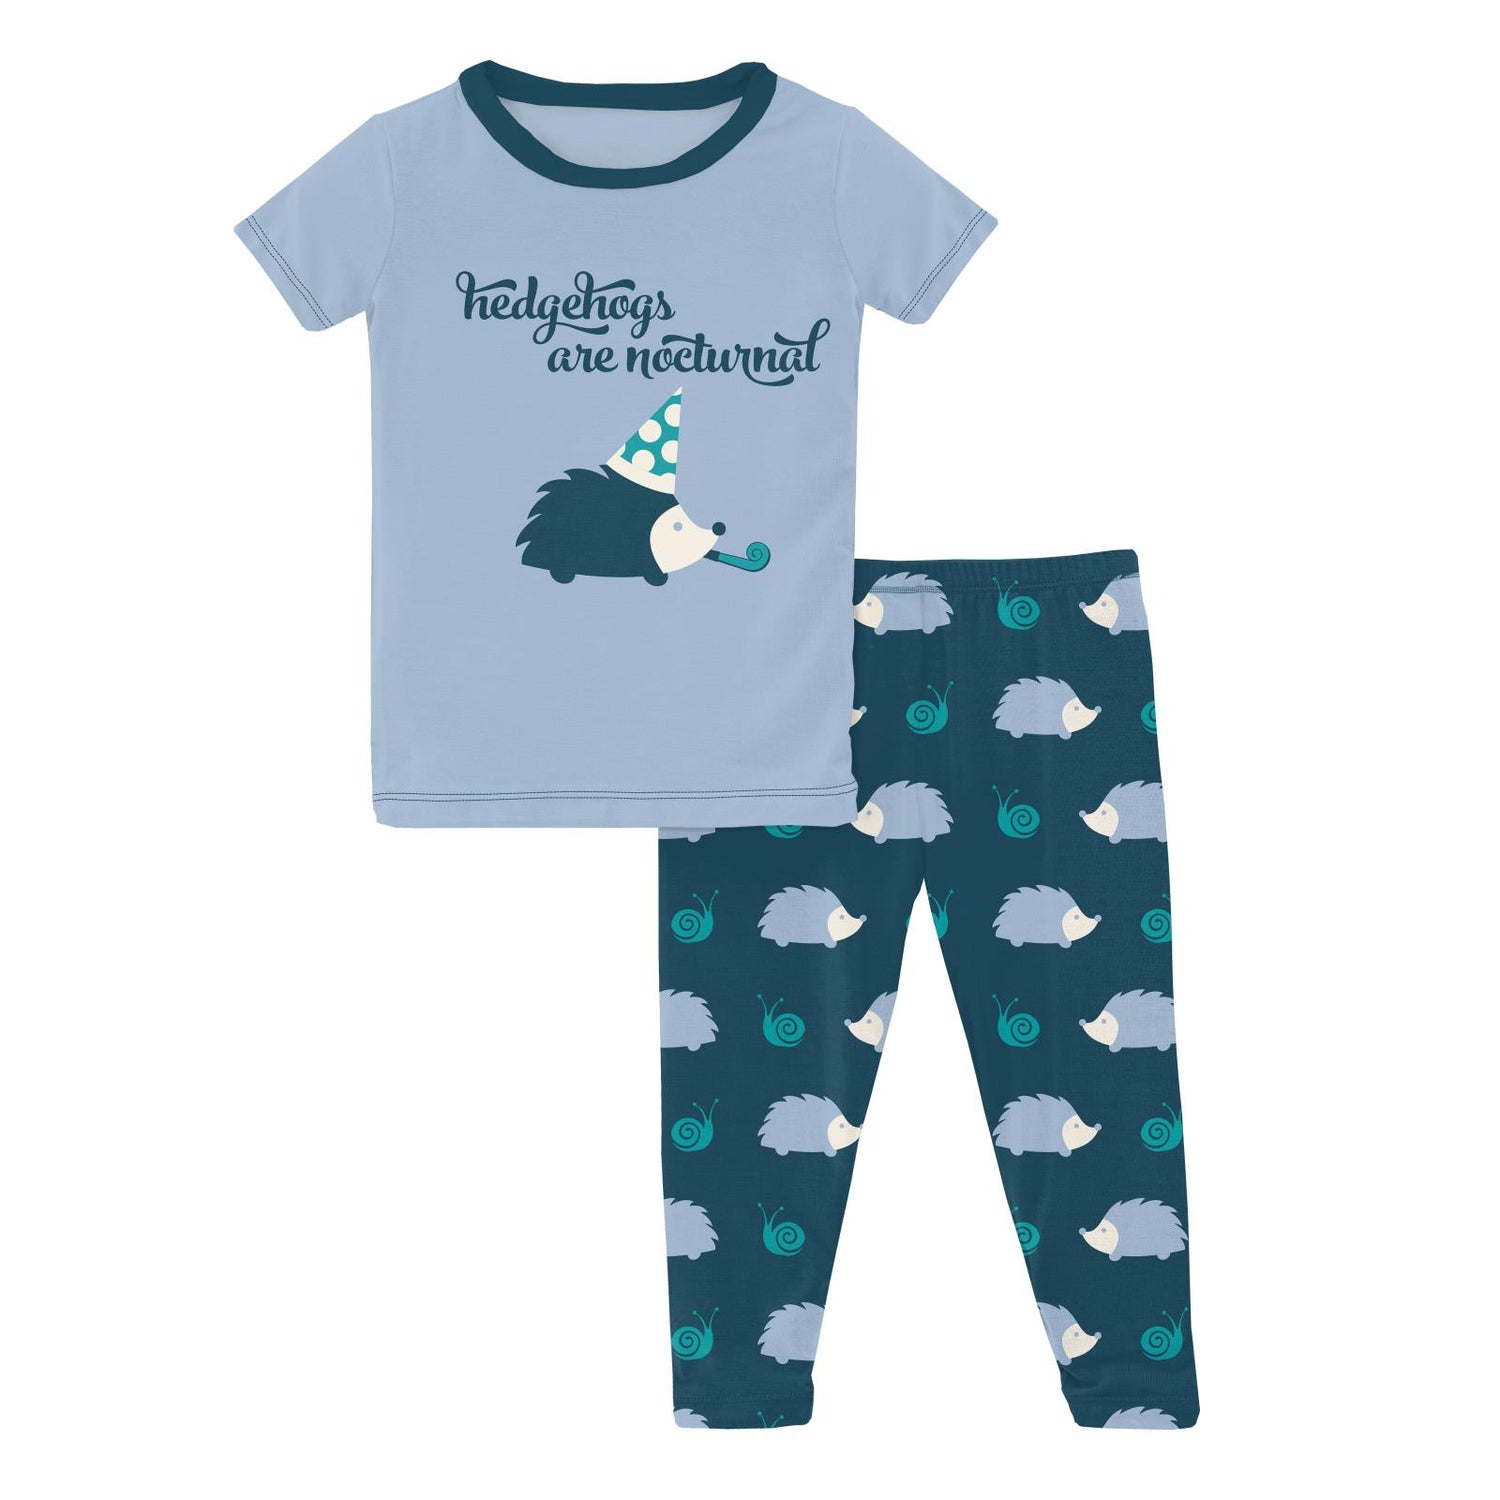 Short Sleeve Graphic Tee Pajama Set in Peacock Hedgehog